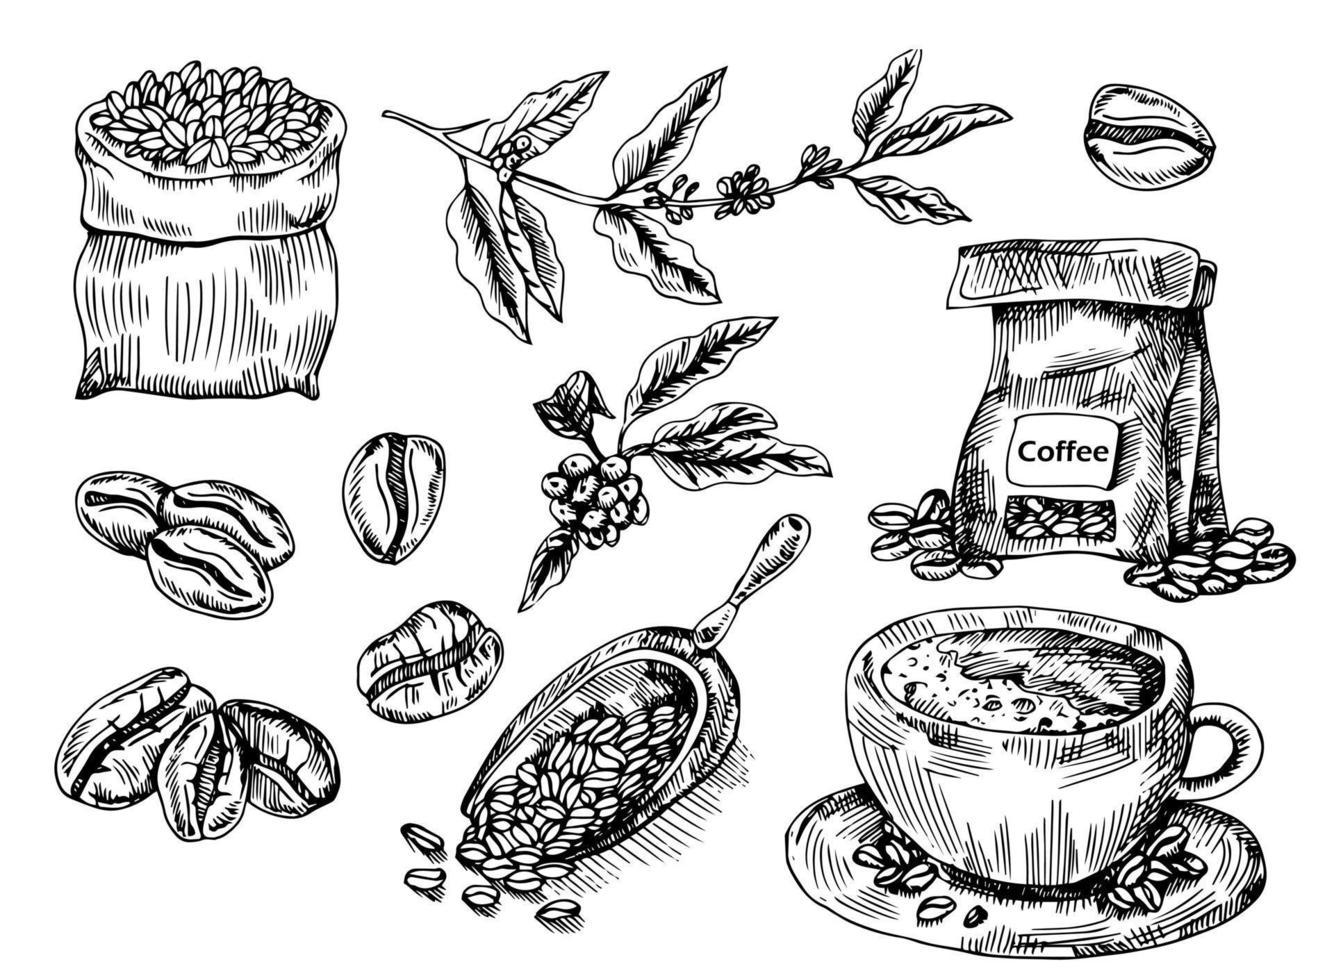 servizio da caffè con ramo di caffè, chicchi di caffè, pessimo caffè, misurino di caffè. illustrazione vettoriale disegnata a mano in stile schizzo. disegnato a inchiostro.